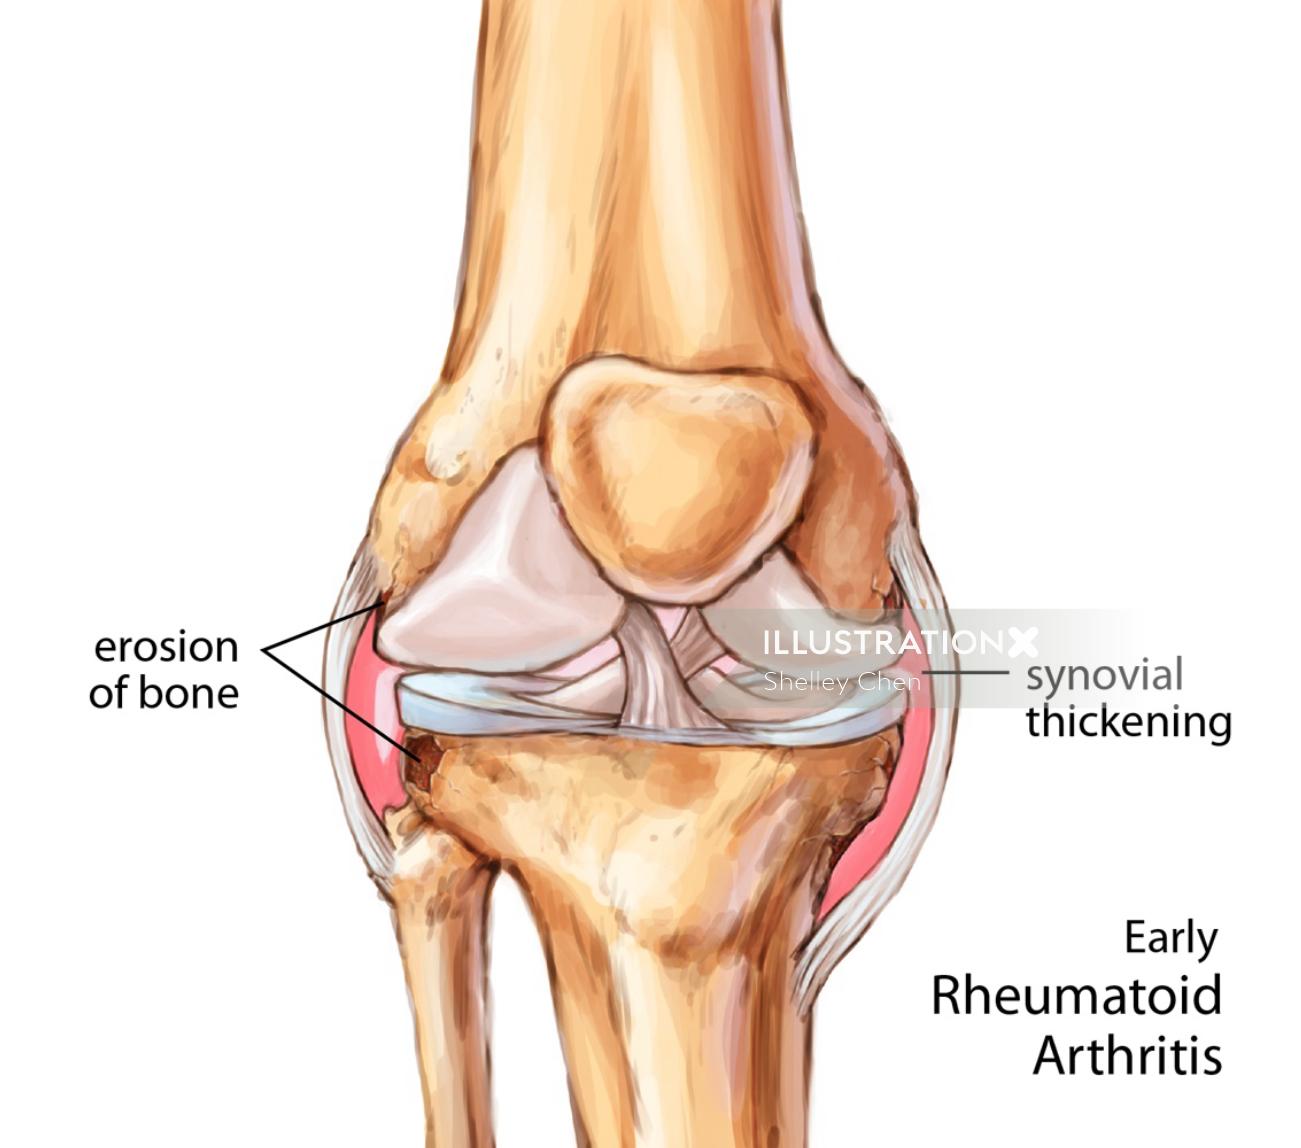 Early rheumatoid arthritic knee joint illustration by Shelley Li Wen Chen